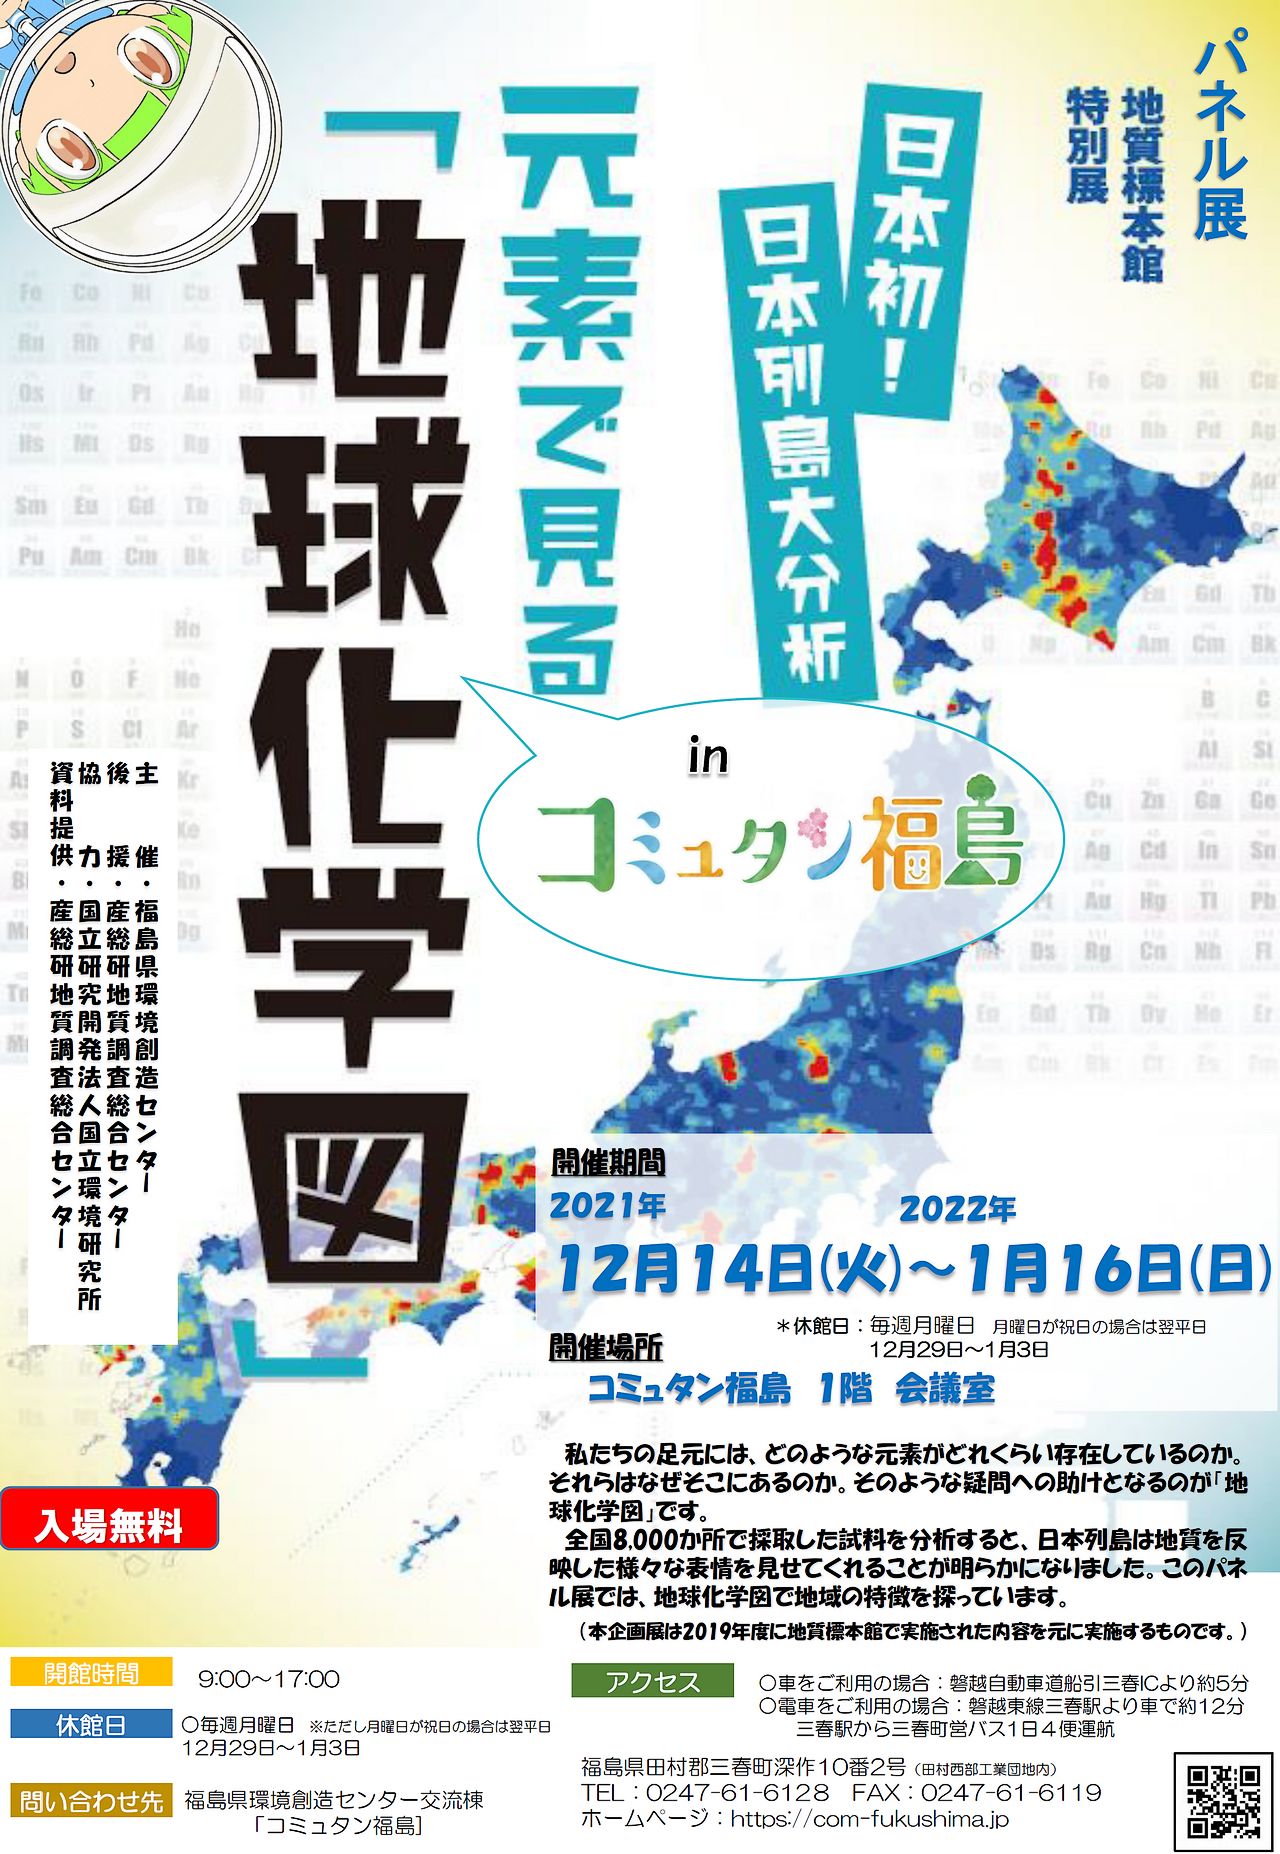 【冬季企画展】「日本列島大分析 元素で見る『地球化学図』」in コミュタン福島【表】